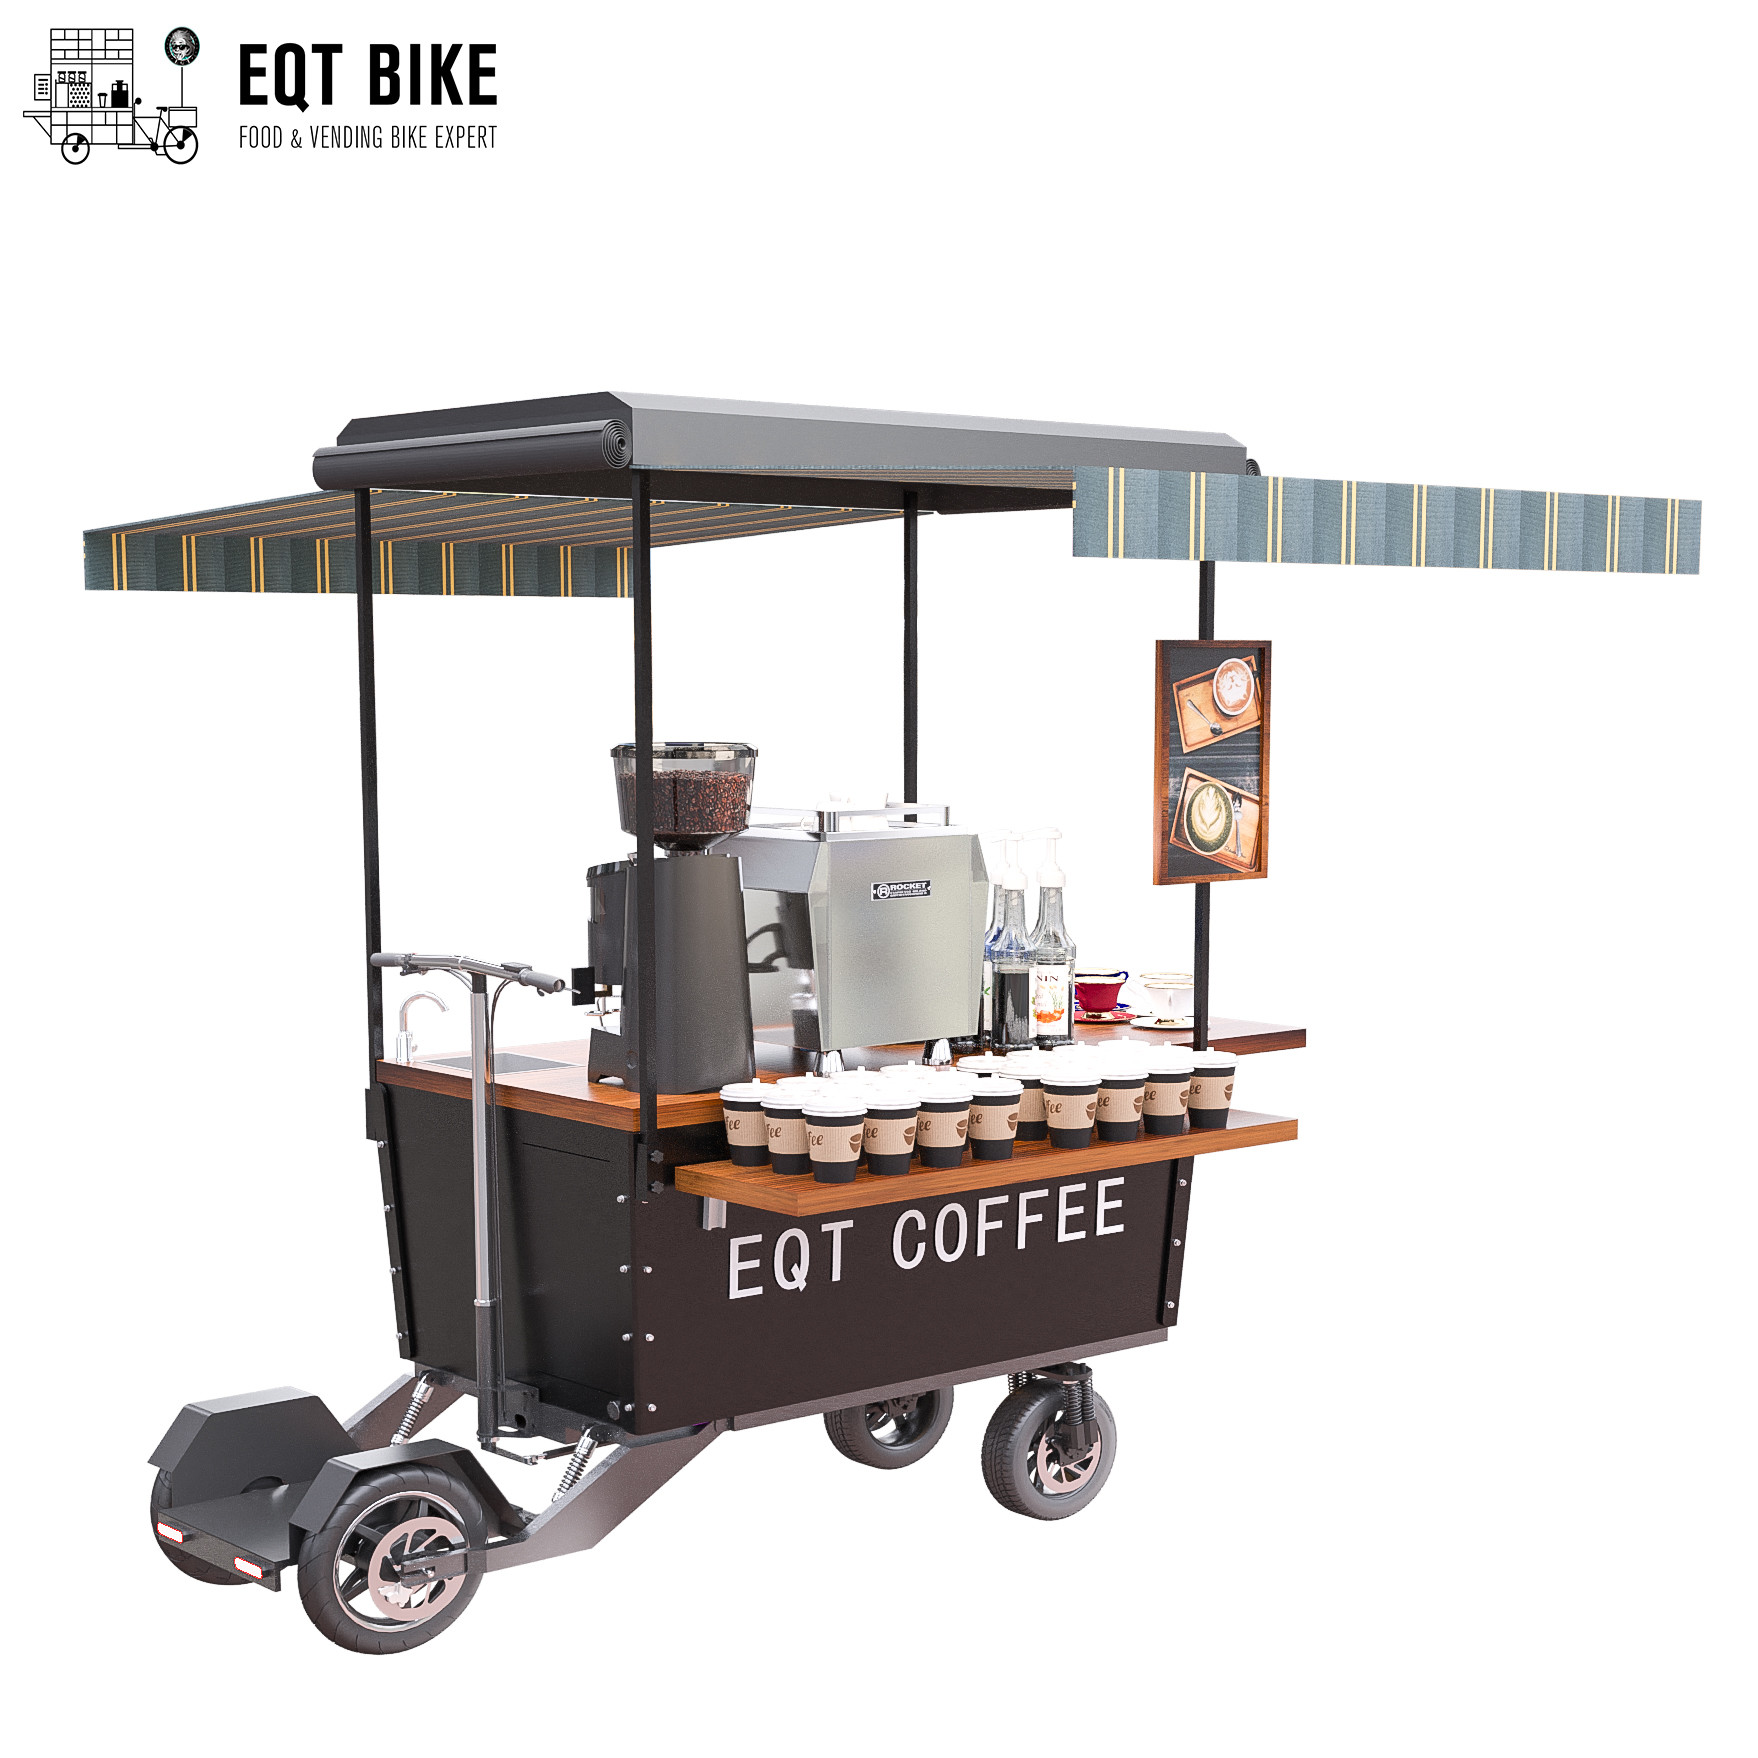 Via impermeabile che vende il carretto della bici del caffè con il freno a disco